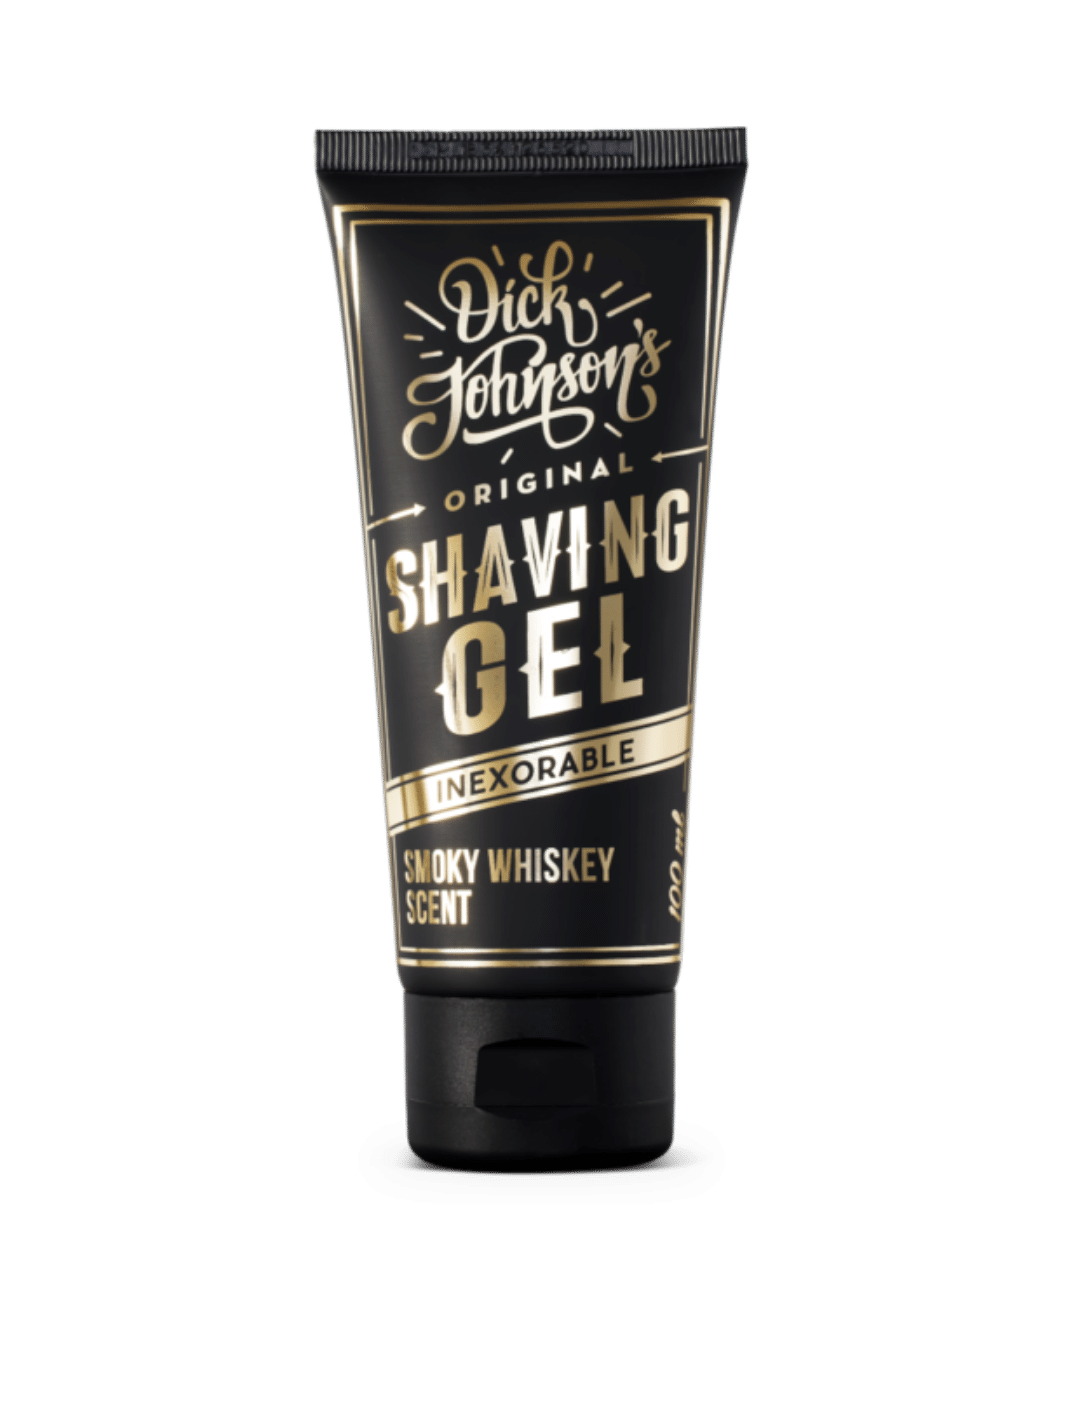 Dick Johnson Rasiergel Smoky Whiskey 100ml, transparentes Gel mit Whiskey-Duft für eine glatte Rasur, jetzt bei Phullcutz verfügbar. Ideal für die Pflege empfindlicher Haut.